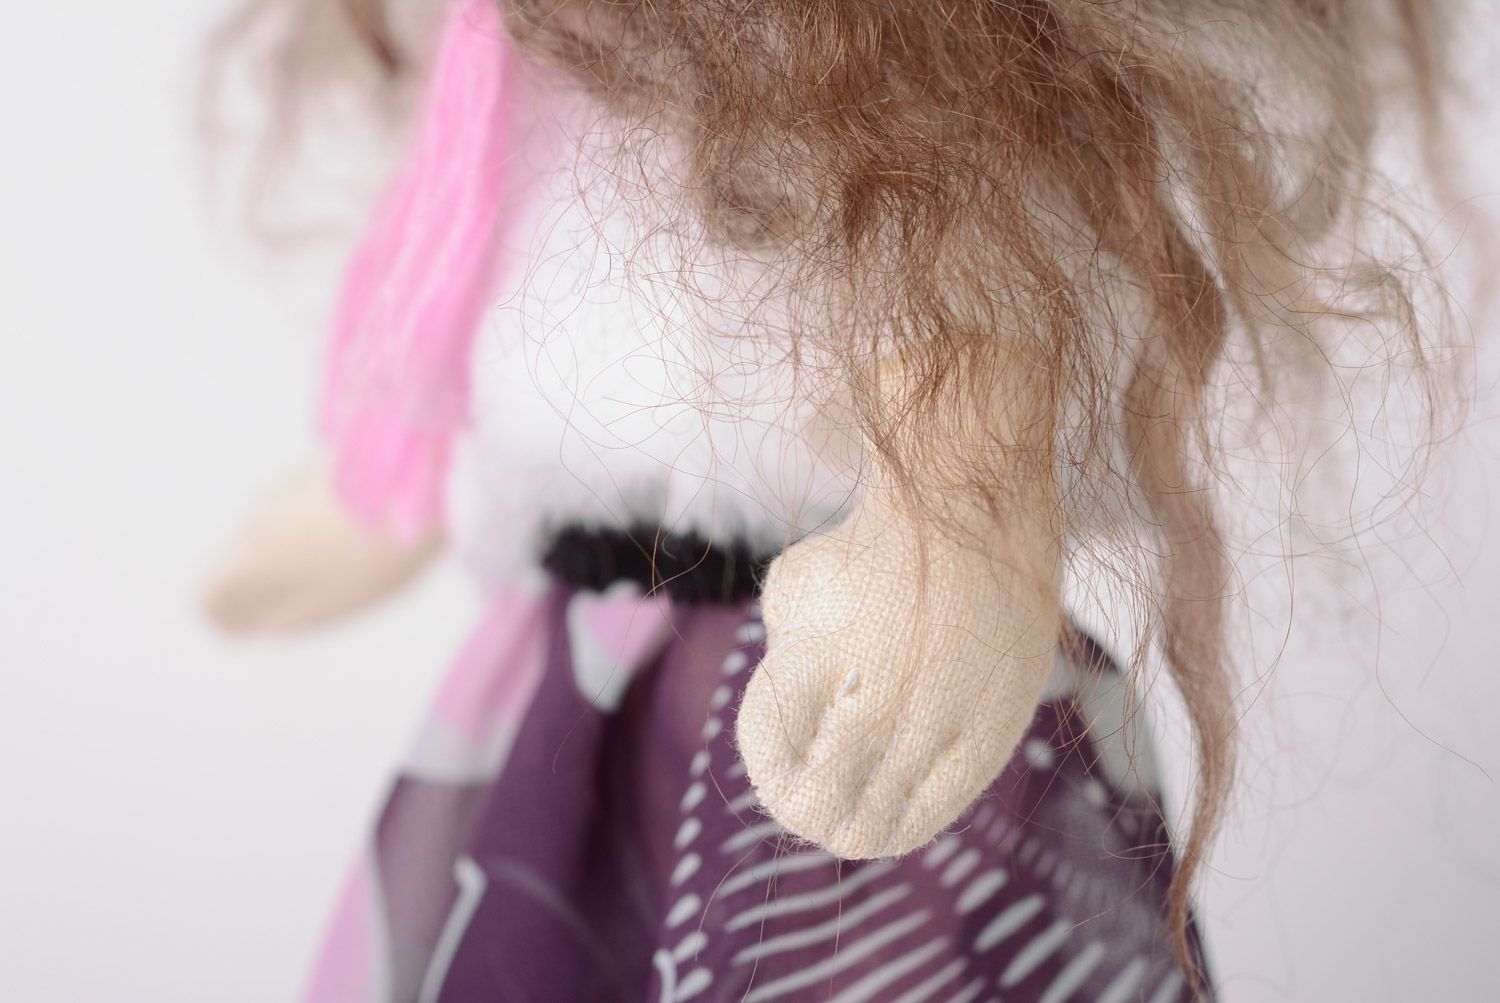 Игрушка кукла из ткани в зимнем наряде симпатичная на подставке хенд мэйд фото 5